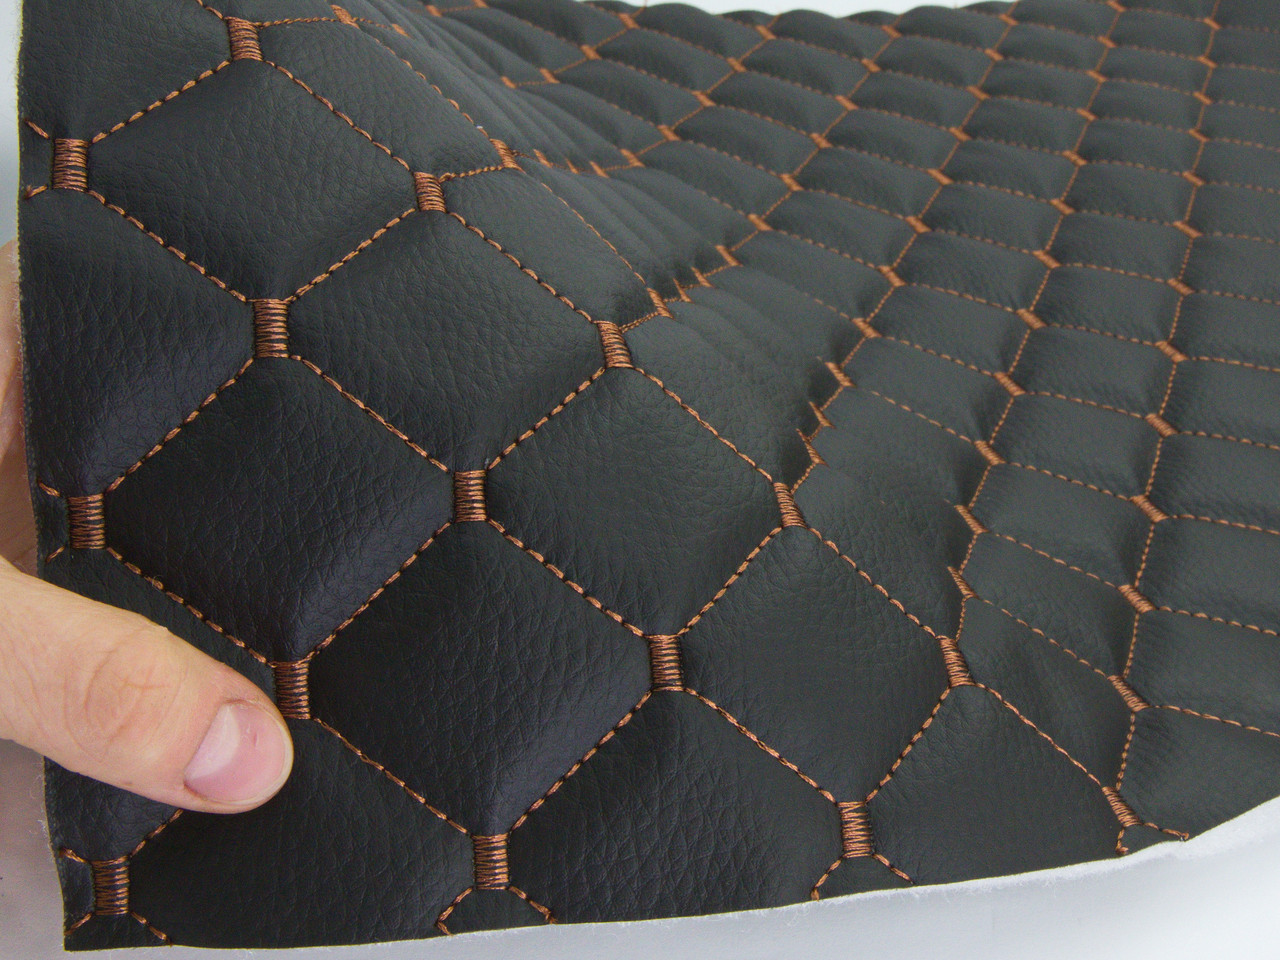 Кожзам стёганый черный «Ромб» (прошитый коричневой нитью) дублированный синтепоном и флизелином, ширина 1,35м детальная фотка